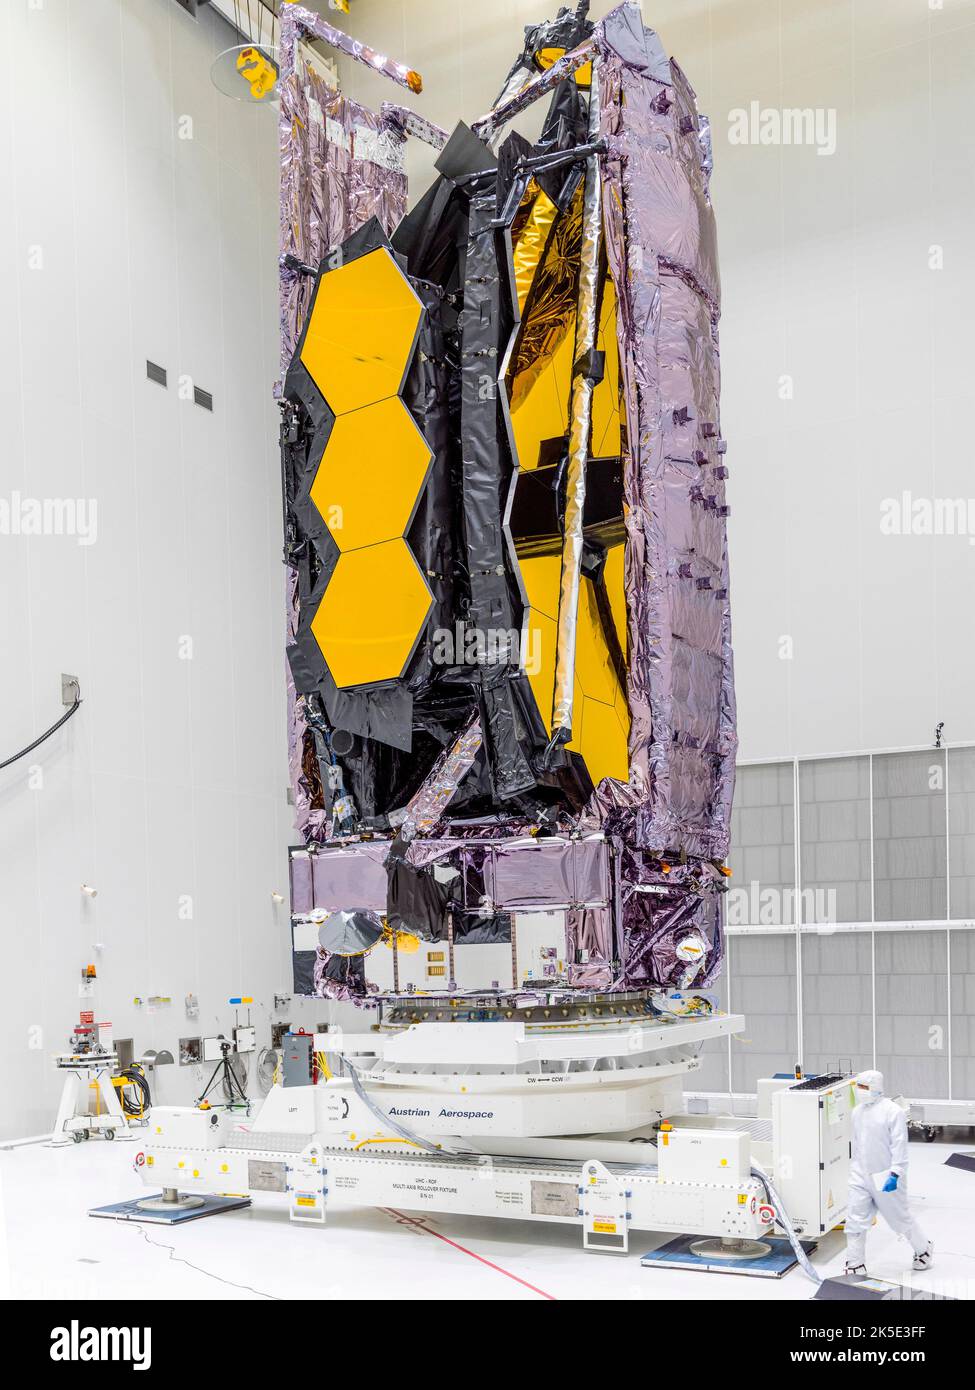 Das James Webb Space Telescope (JWST) im Reinraum am Startplatz des Weltraumzentrums Guayana in Französisch-Guayana nach einem 5.800 Meilen langen Umzug aus den USA. Nach seiner Ankunft wurde Webb vorsichtig aus seinem Verpackungsbehälter gehoben und dann vertikal angehoben. Dies ist die gleiche Konfiguration, in der Webb sich befindet, wenn es sich in seinem Trägerrakete Ariane 5 befindet. Eine optimierte Version eines NASA-Bildes vom erfahrenen Hauptfotografen Chris Gunn. Quelle: NASA/Chris Gunn. Nur für redaktionelle Zwecke. Stockfoto